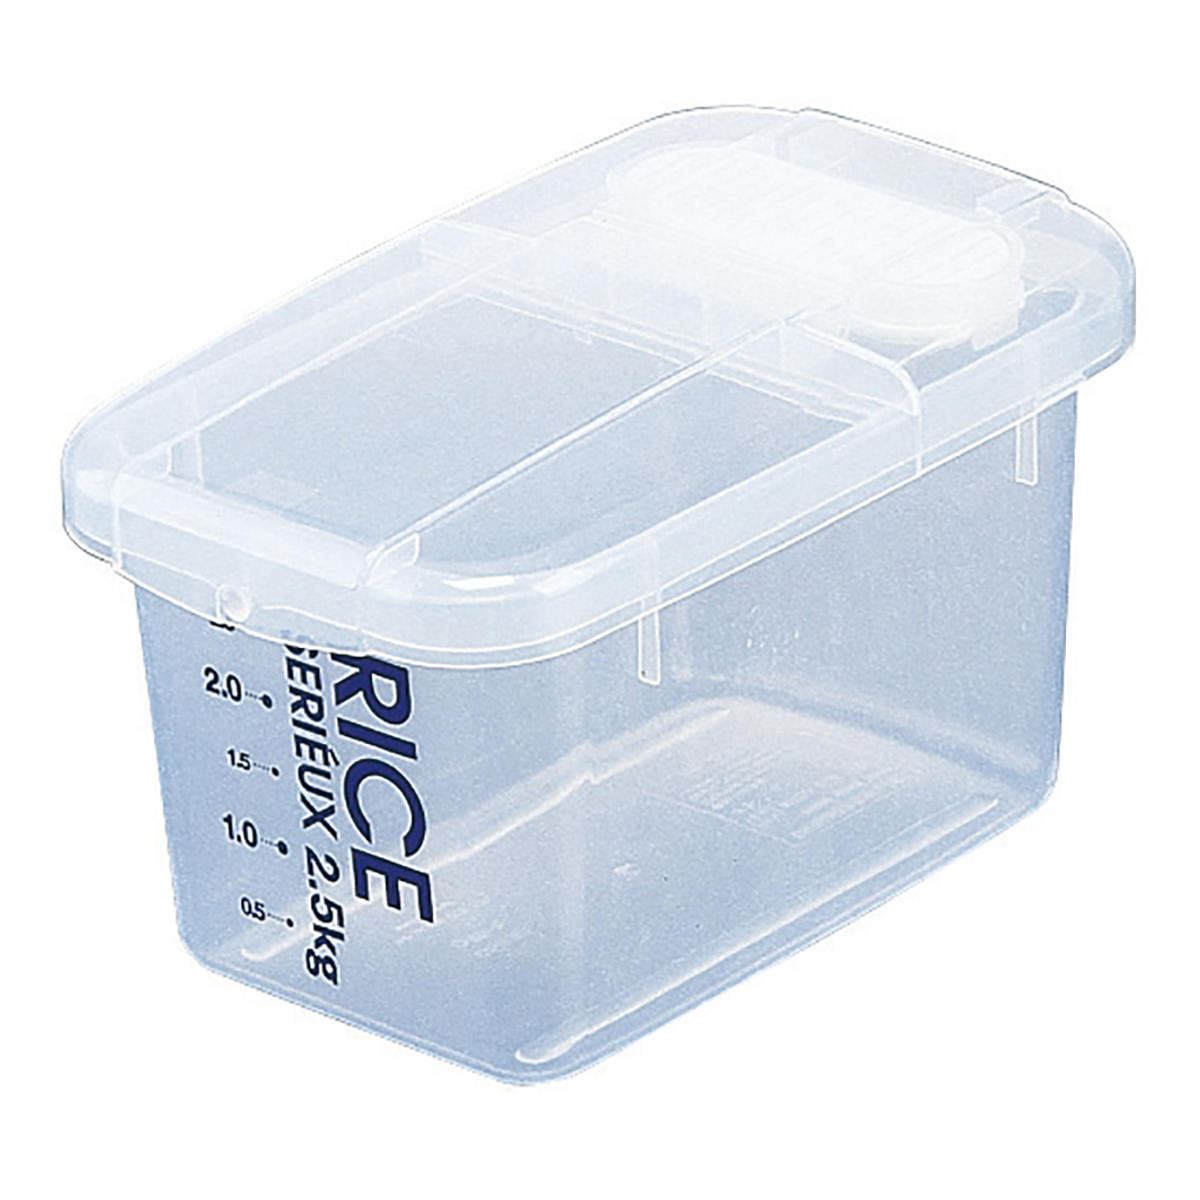 米びつ 防虫米びつ 2kg用 セリュー （ 計量カップ付き 防虫 日本製 無洗米対応 プラスチック 2kg ライスボックス 米櫃 こめびつ ライスス